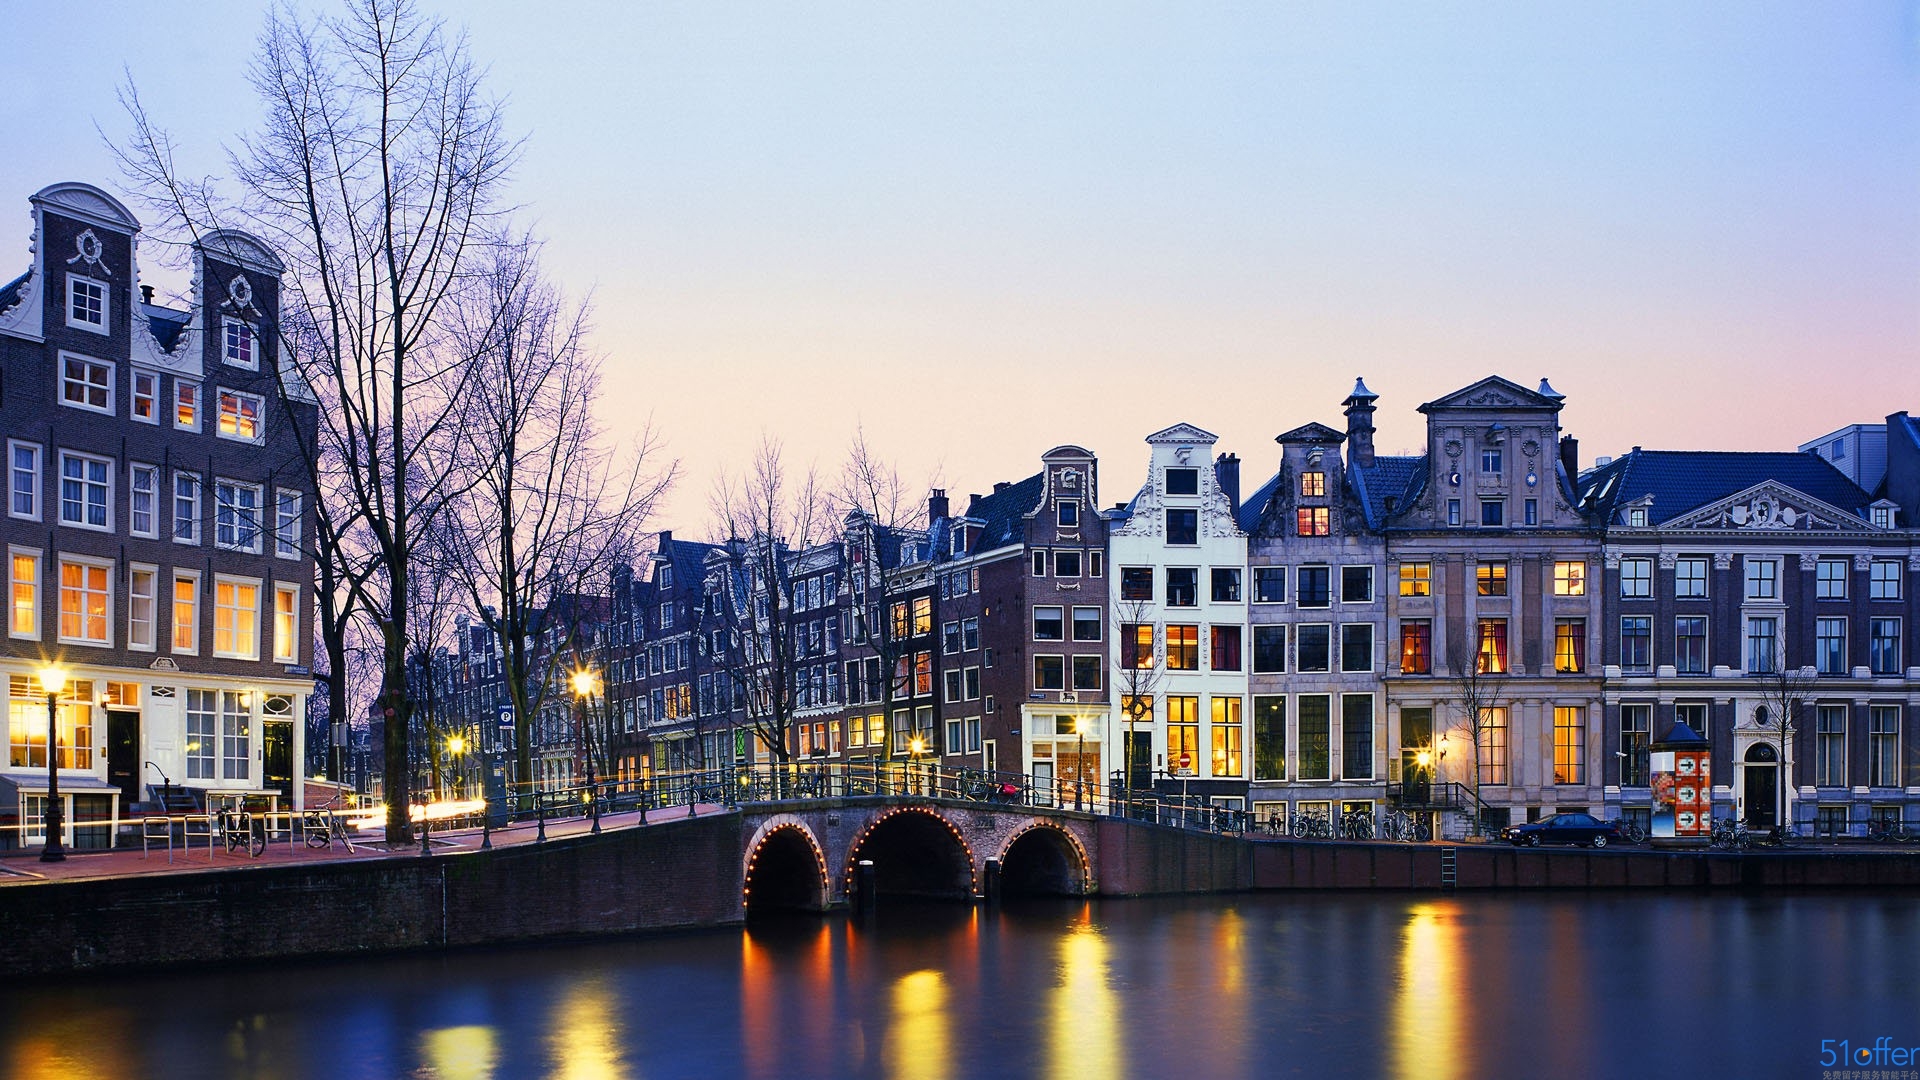 荷兰留学:公立大学申请难度增大